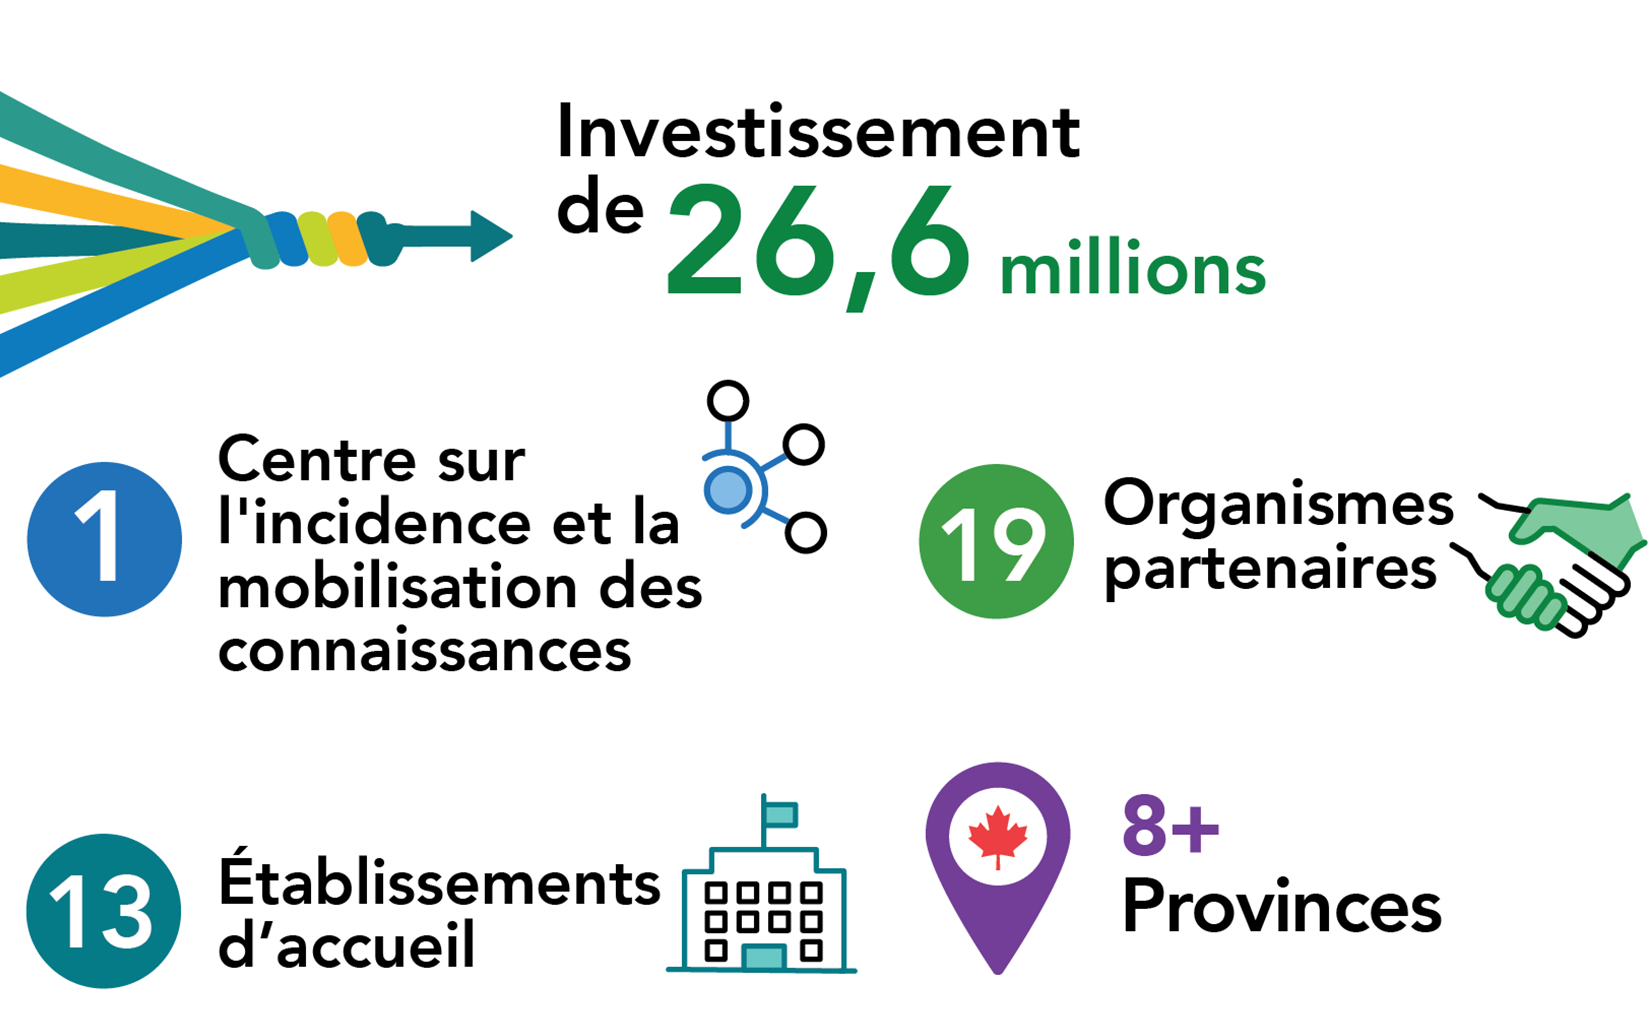 Investissement de 26,6 millions, 1 centre sur l'incidence et la mobilisation des connaissances, 19 organismes partenaires, 13 établissements d'accueil et 8 provinces